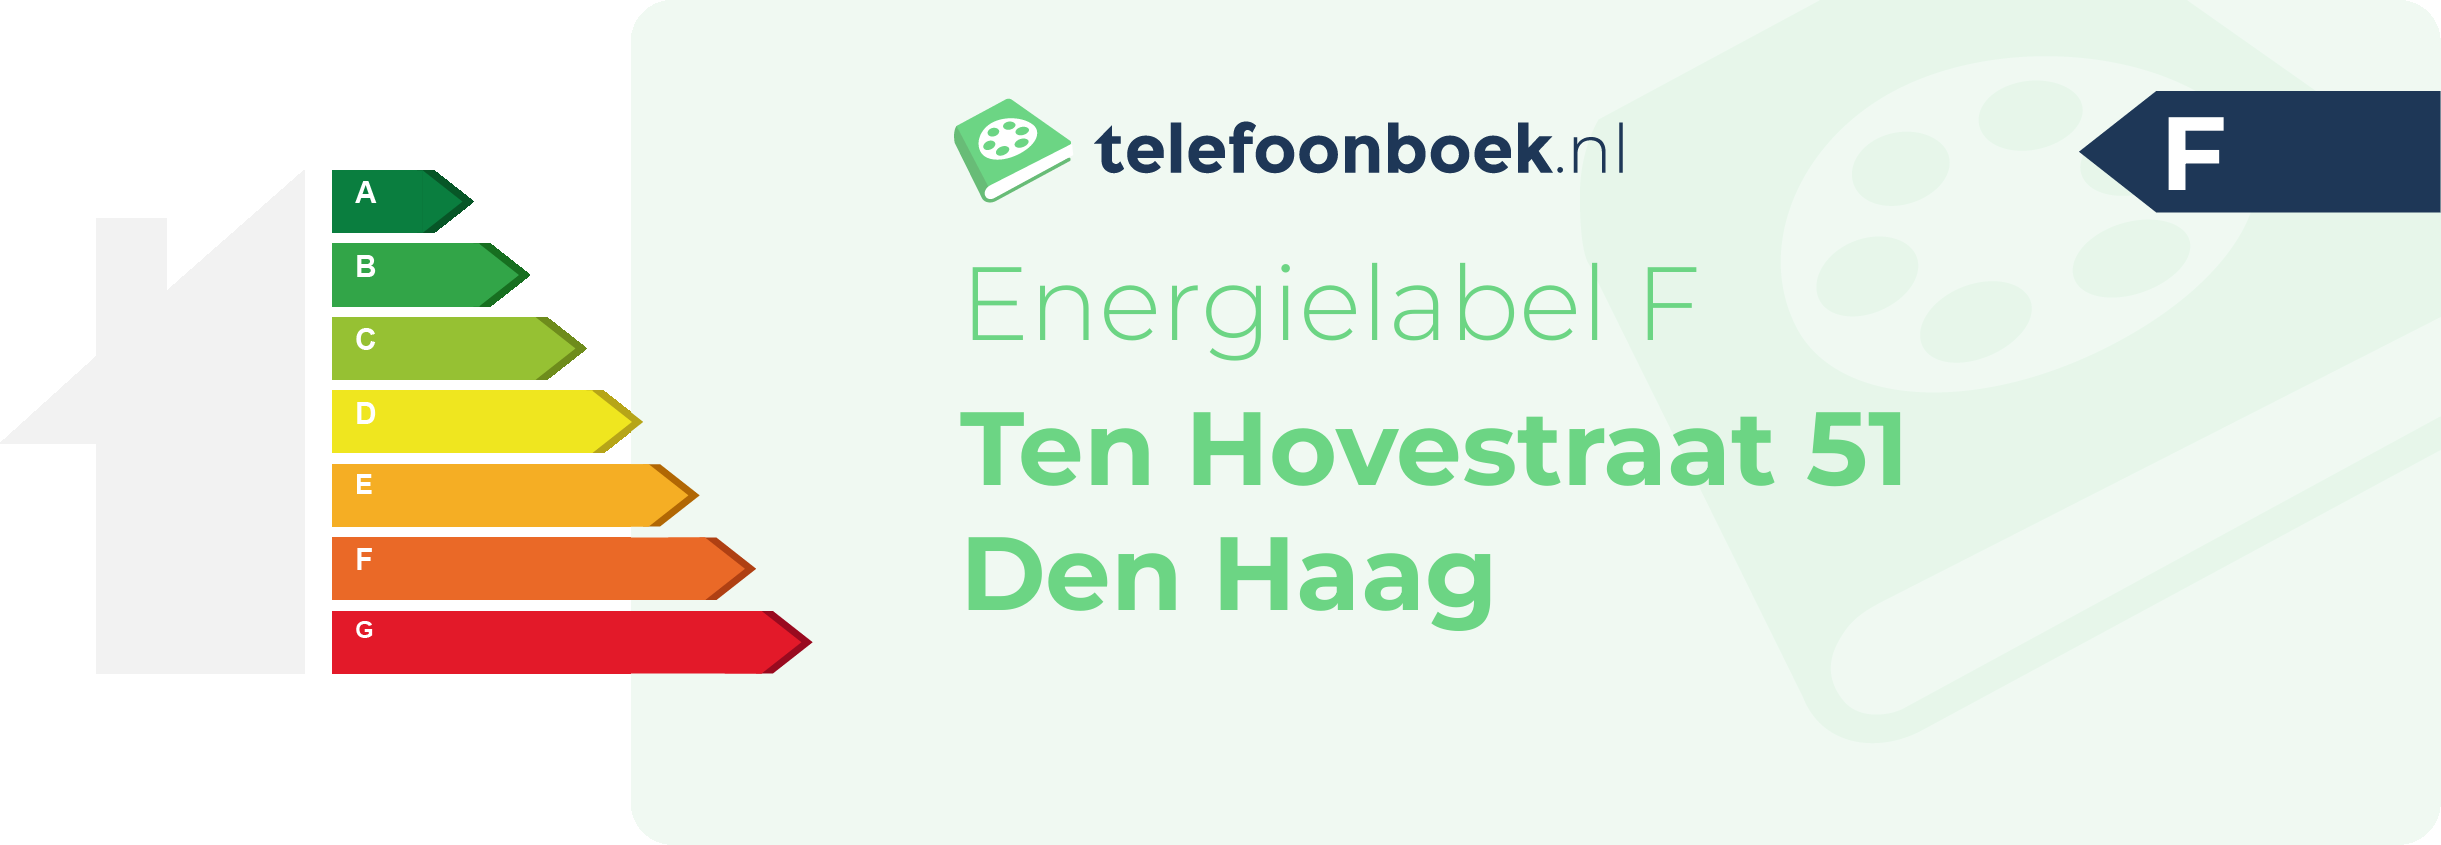 Energielabel Ten Hovestraat 51 Den Haag